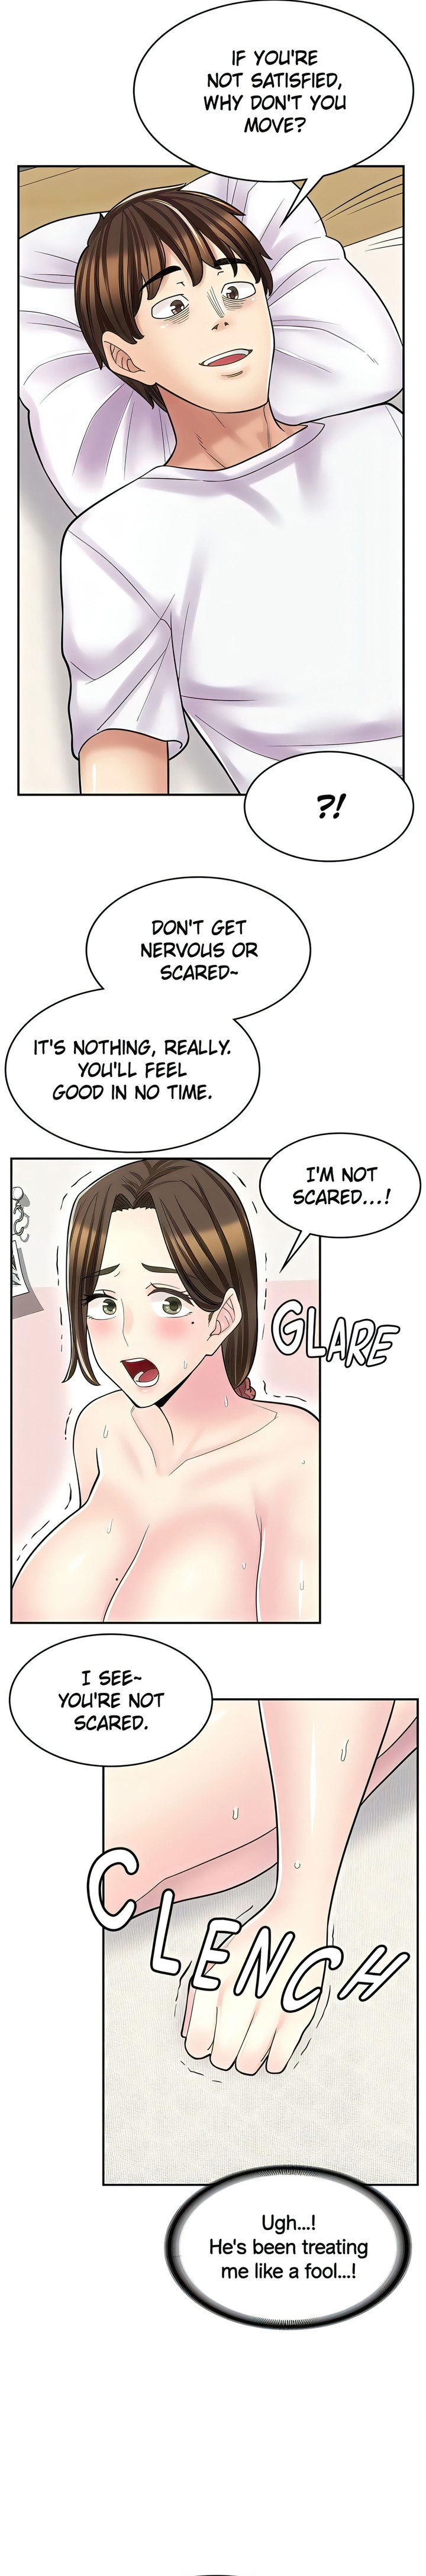 The image Erotic Manga Café Girls - Chapter 25 - 239c172e8f9193c67b - ManhwaManga.io